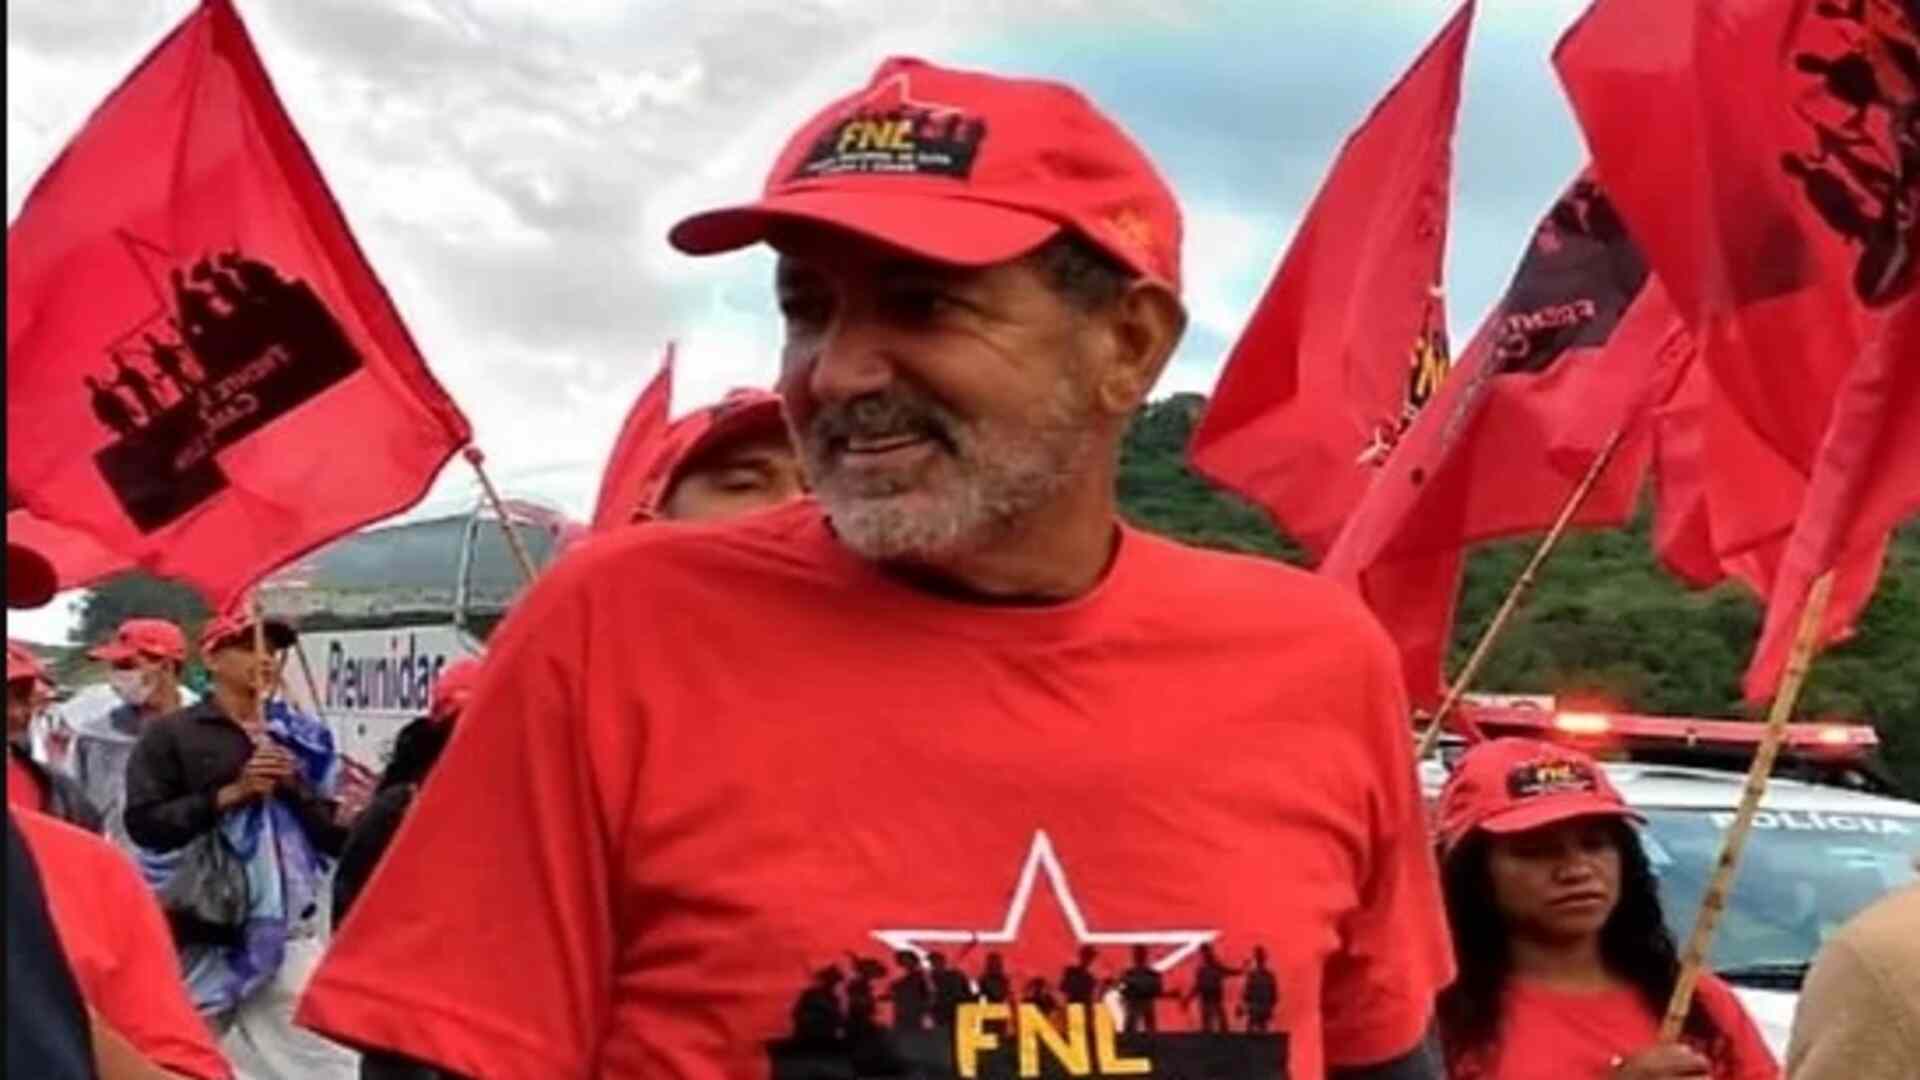 Líder sem-terra, Zé Rainha é preso em SP após movimento que invadiu fazenda de Mato Grosso do Sul